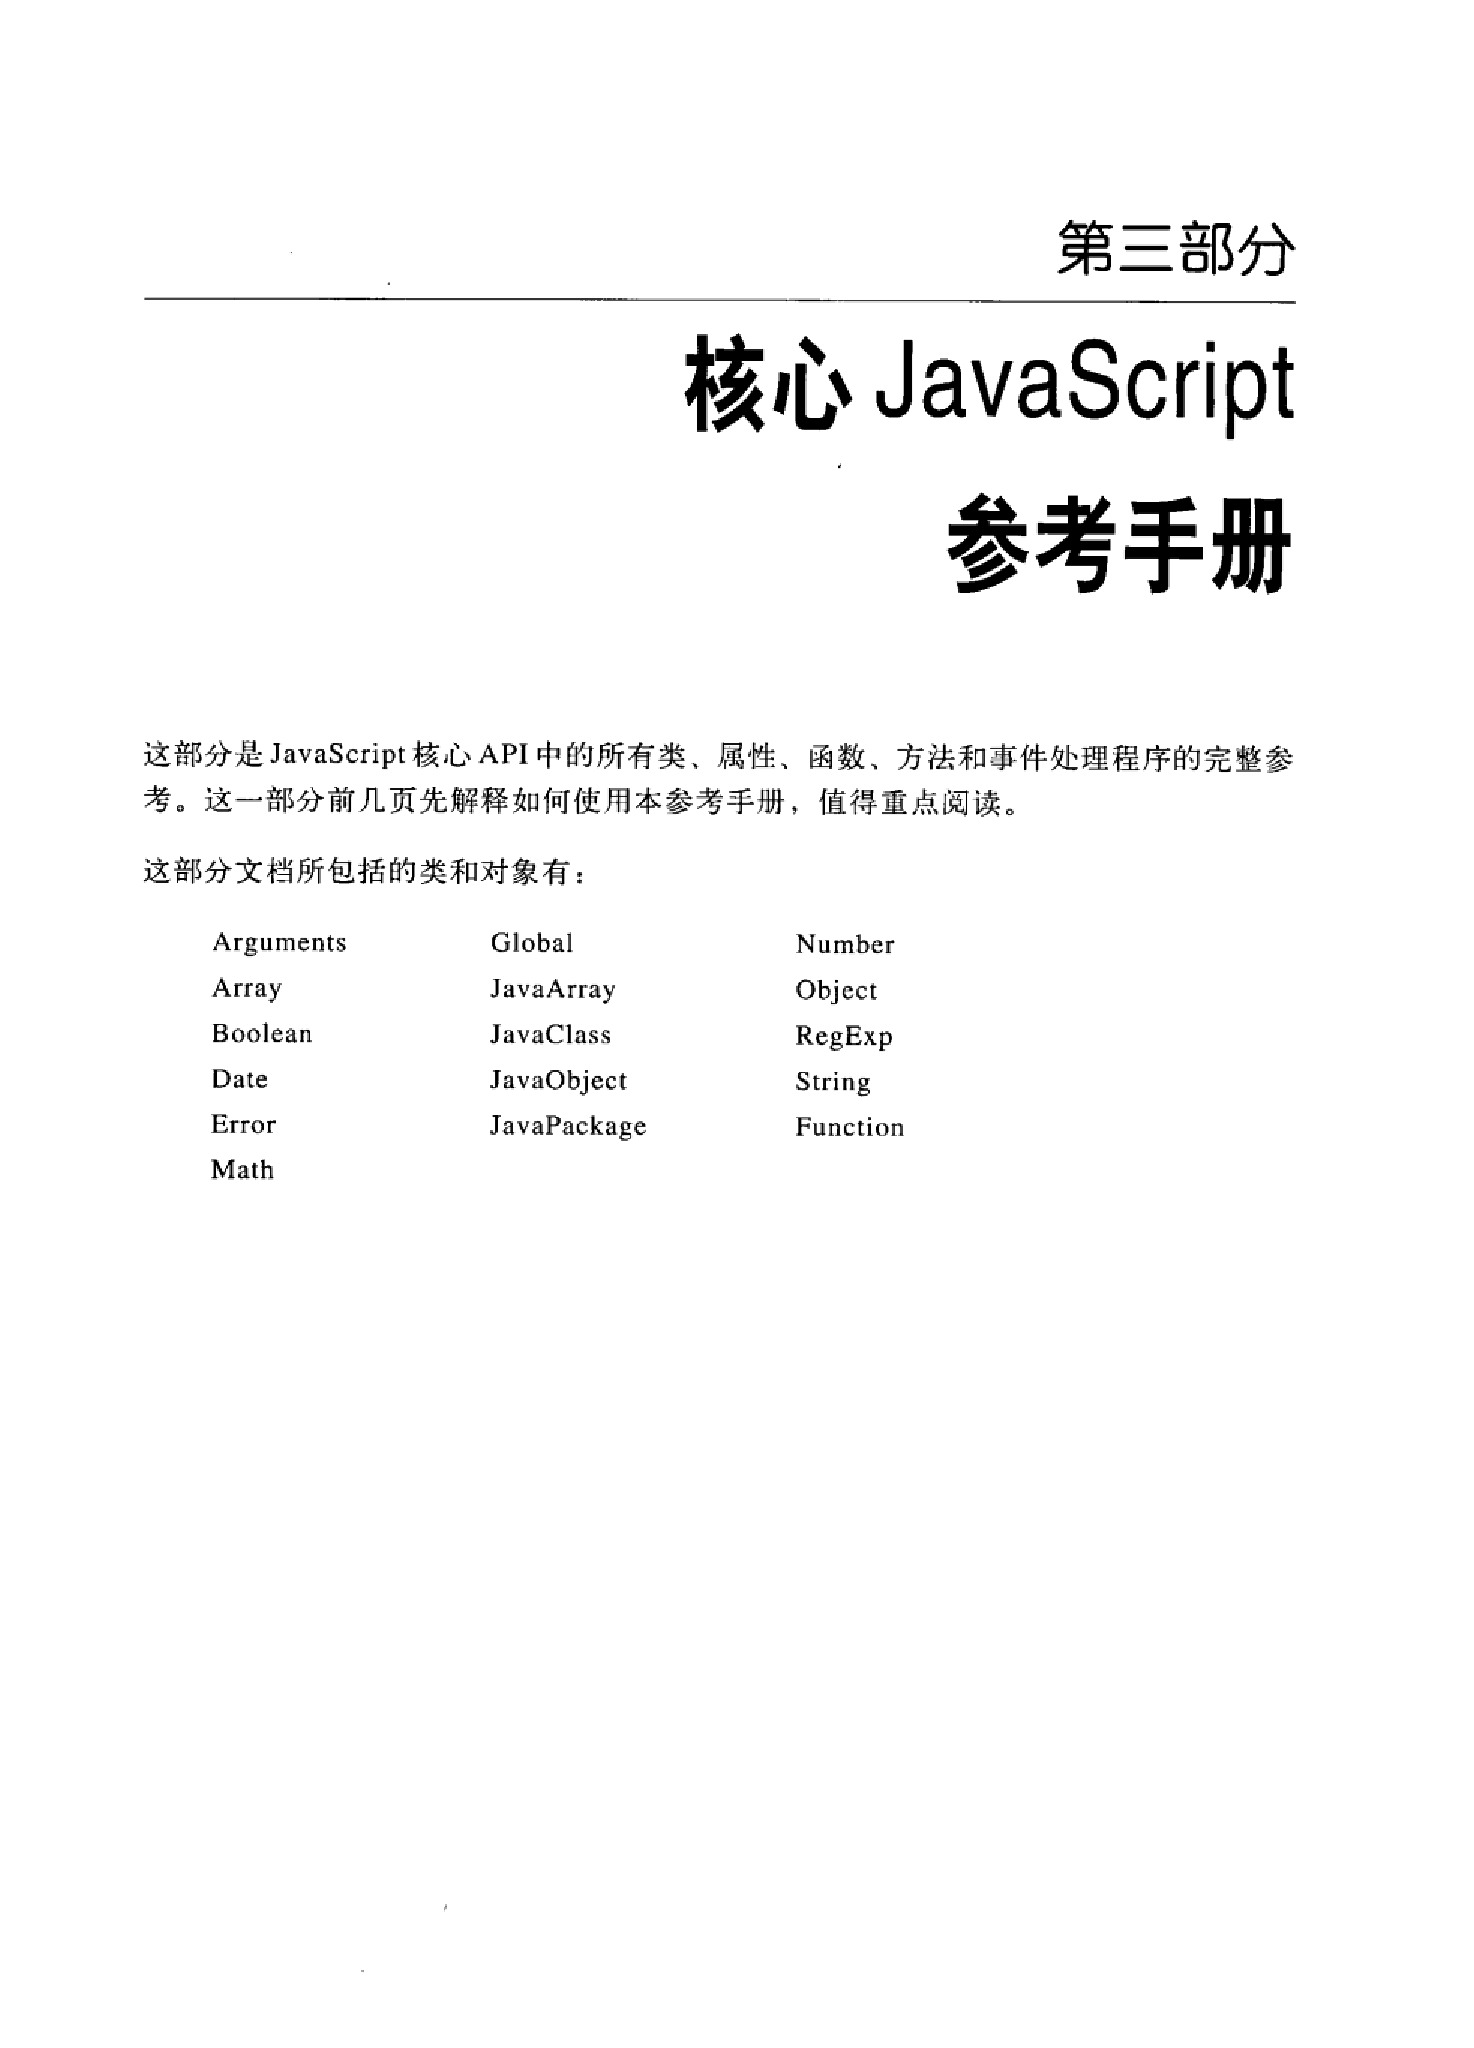 JavaScript权威指南(第5版)中文版(下)